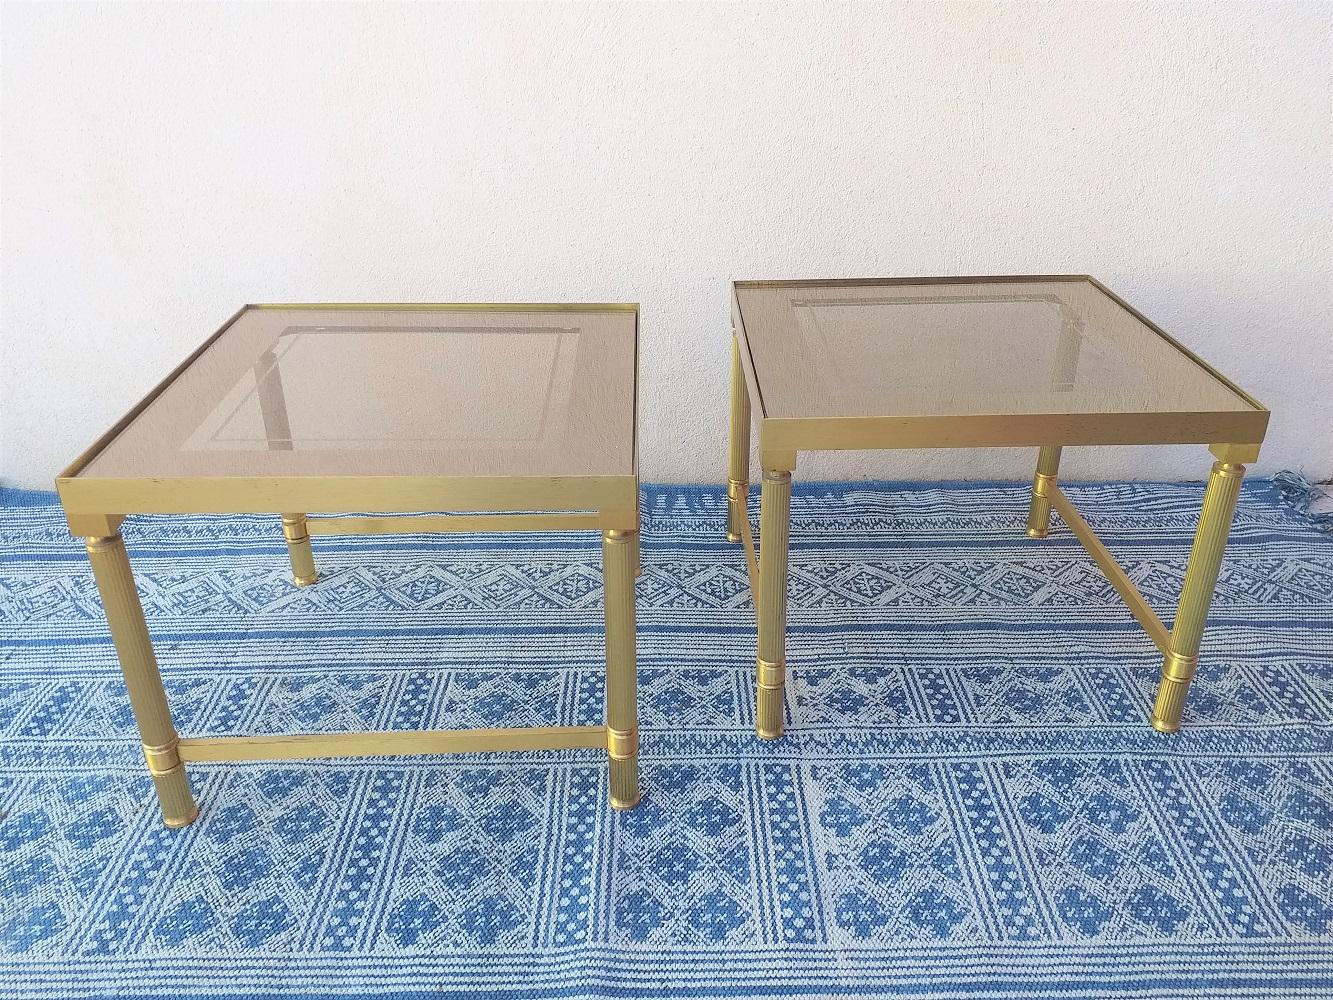 Paire de tables d'appoint en métal peint en cou leur dorée.
Le verre est rayé et les pieds bougent (à ressouder).